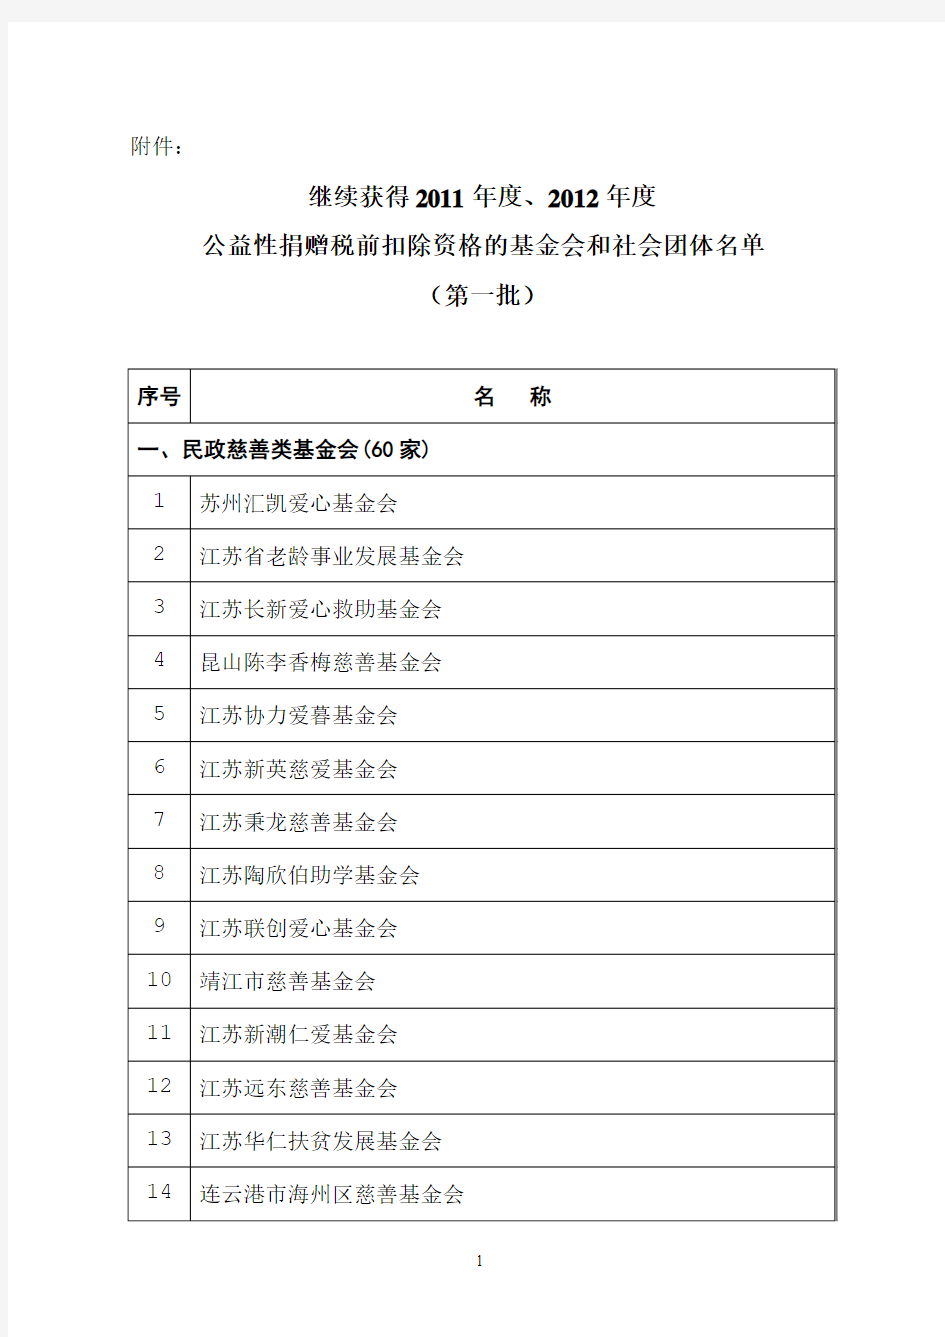 江苏省继续获得2011年度、2012年度公益性捐赠税前扣除资格的基金会和社会团体名单